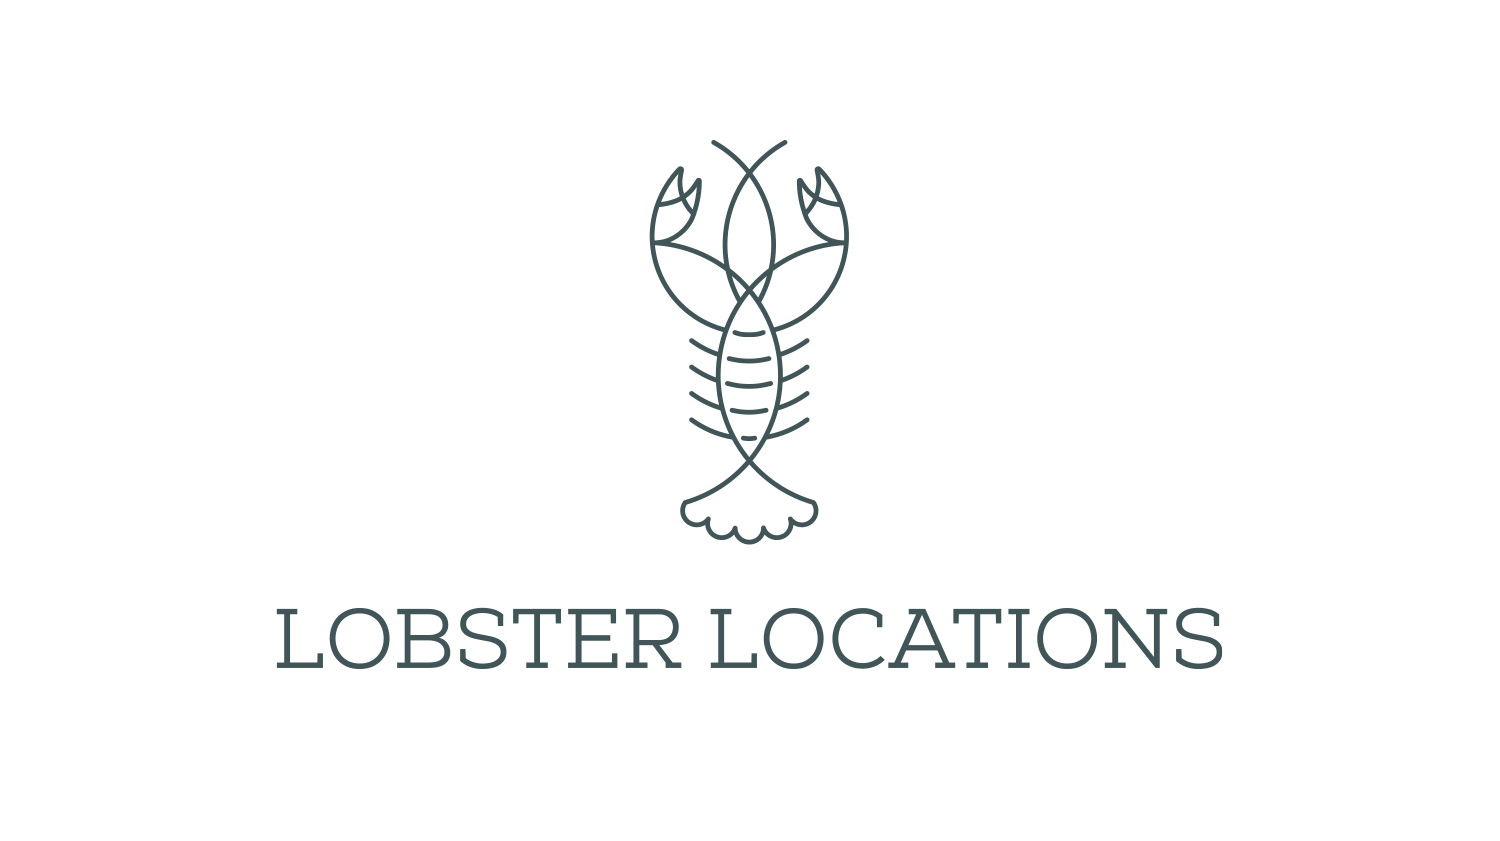 lobster locations logo design